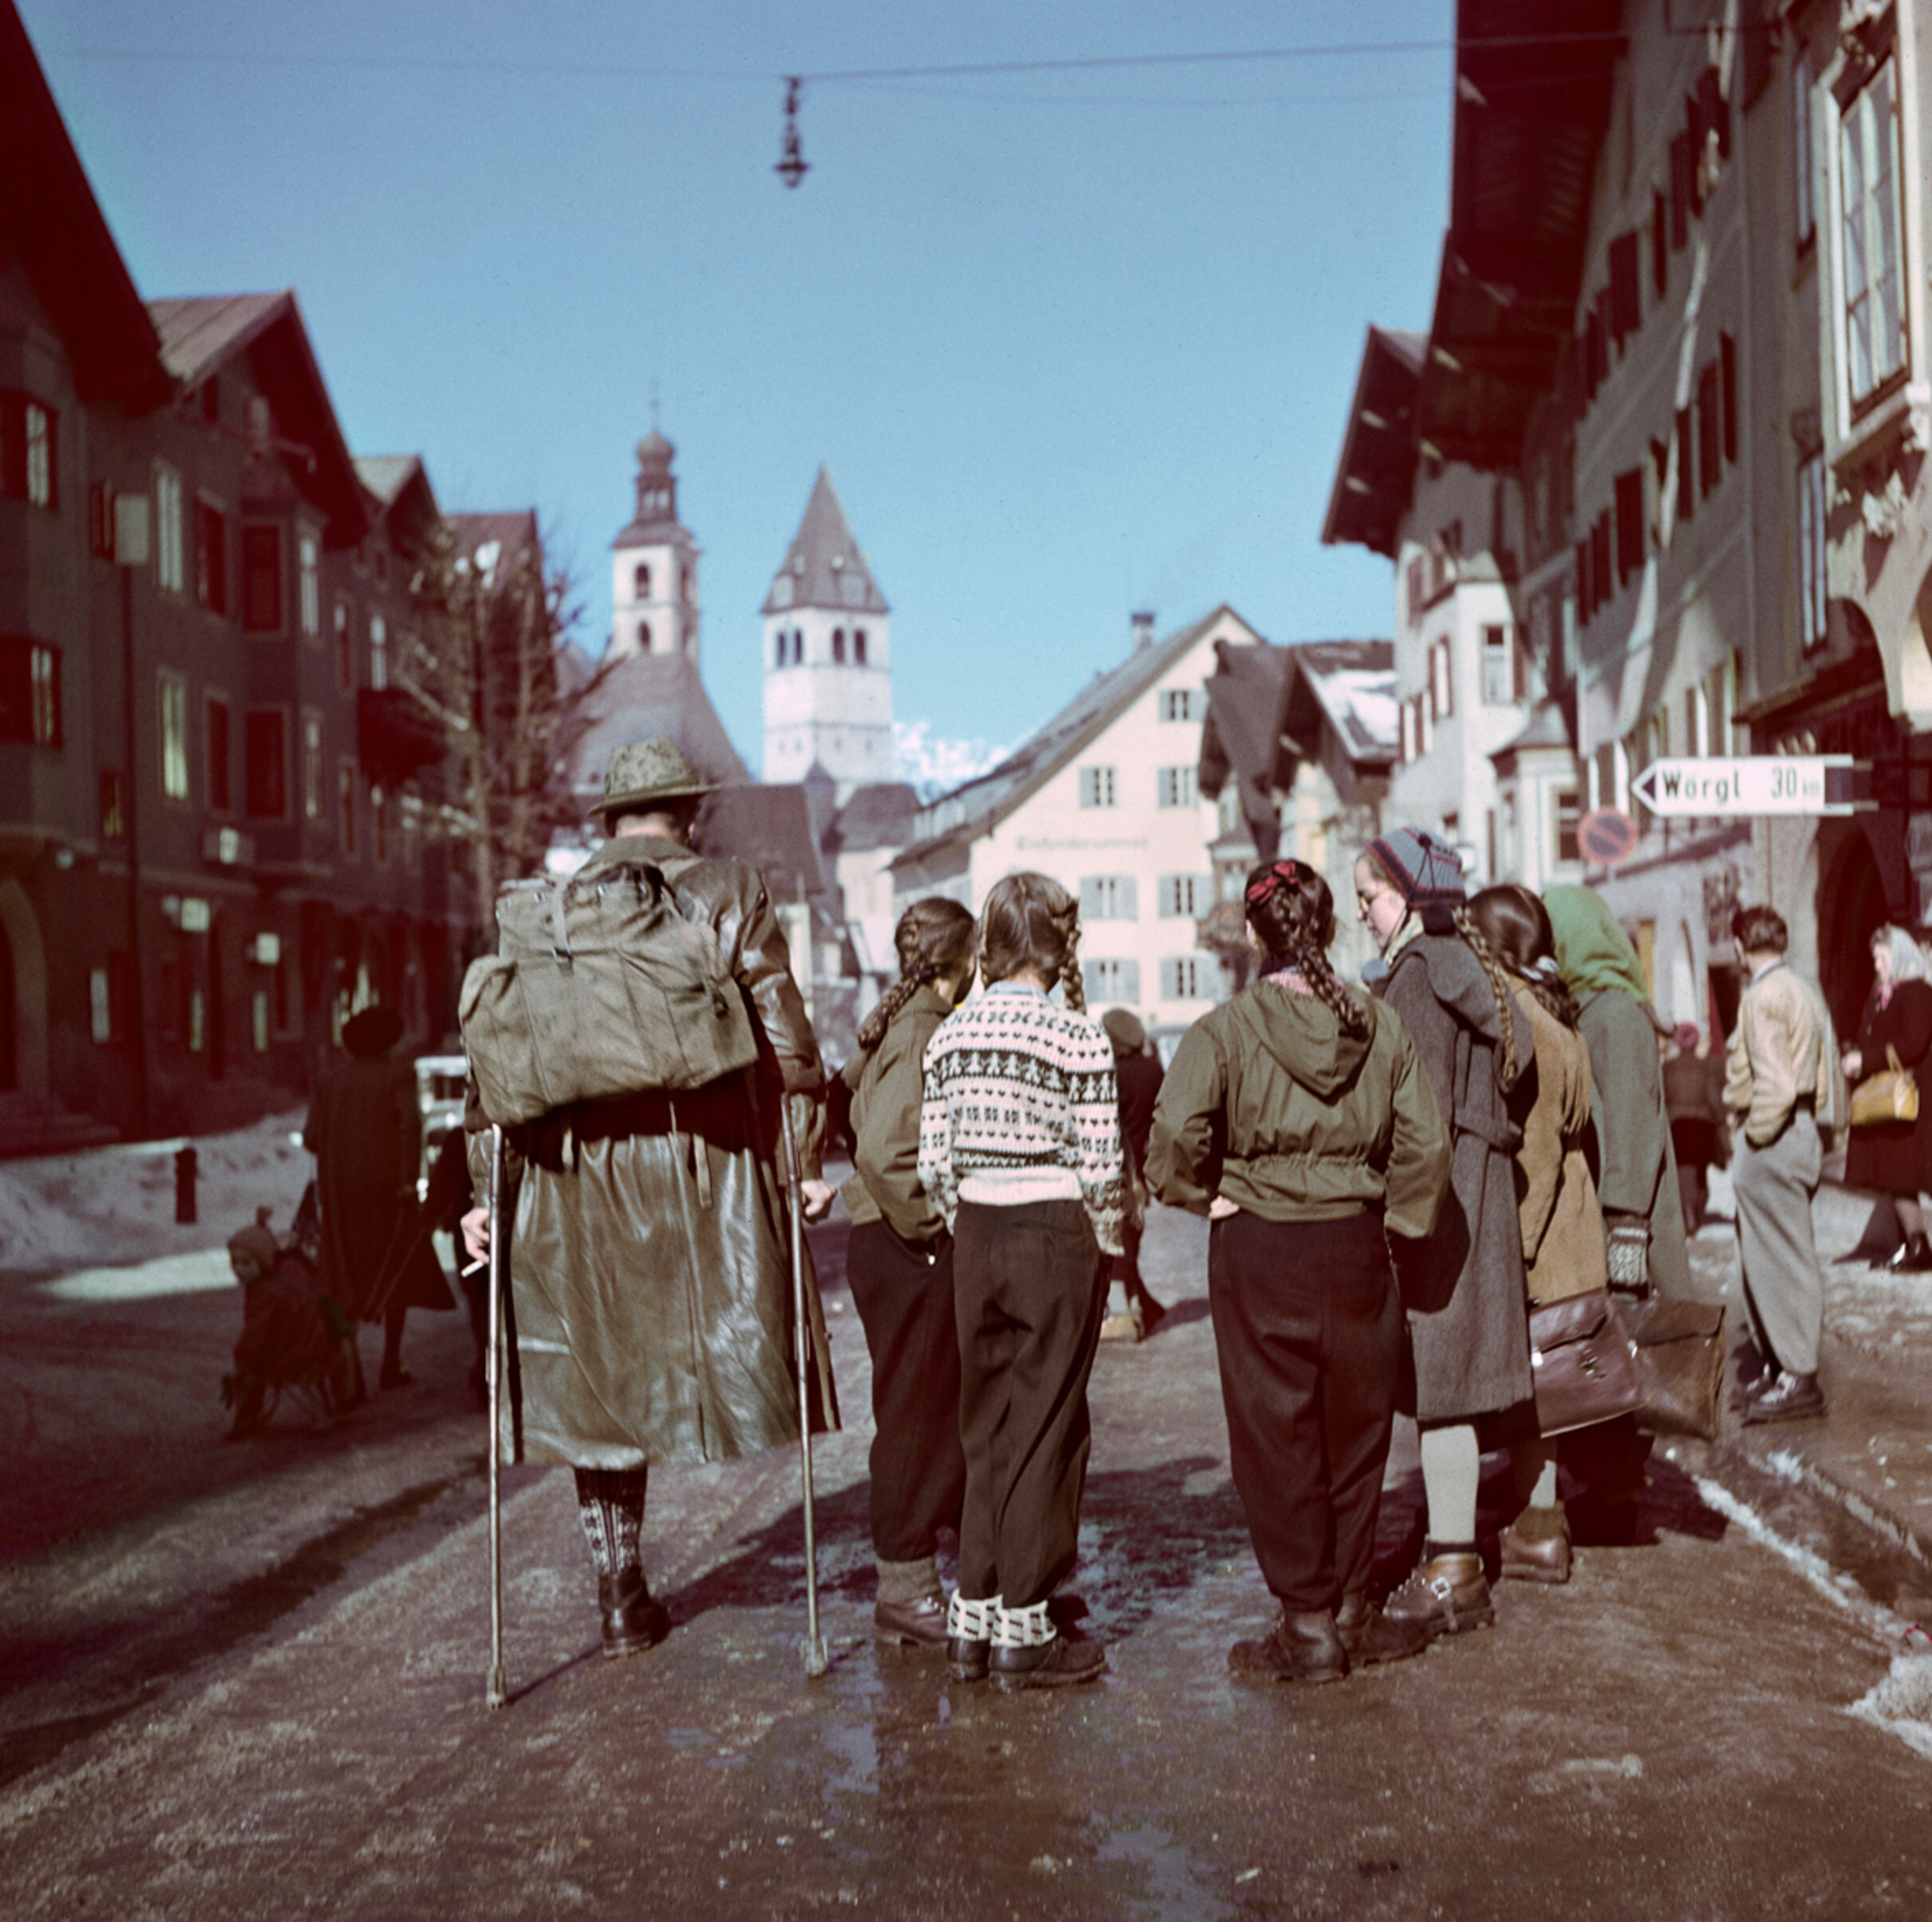 Лыжники и раненый солдат, Китцбюэль, Австрия, 1949-1950 годы Фотограф Роберт Капа